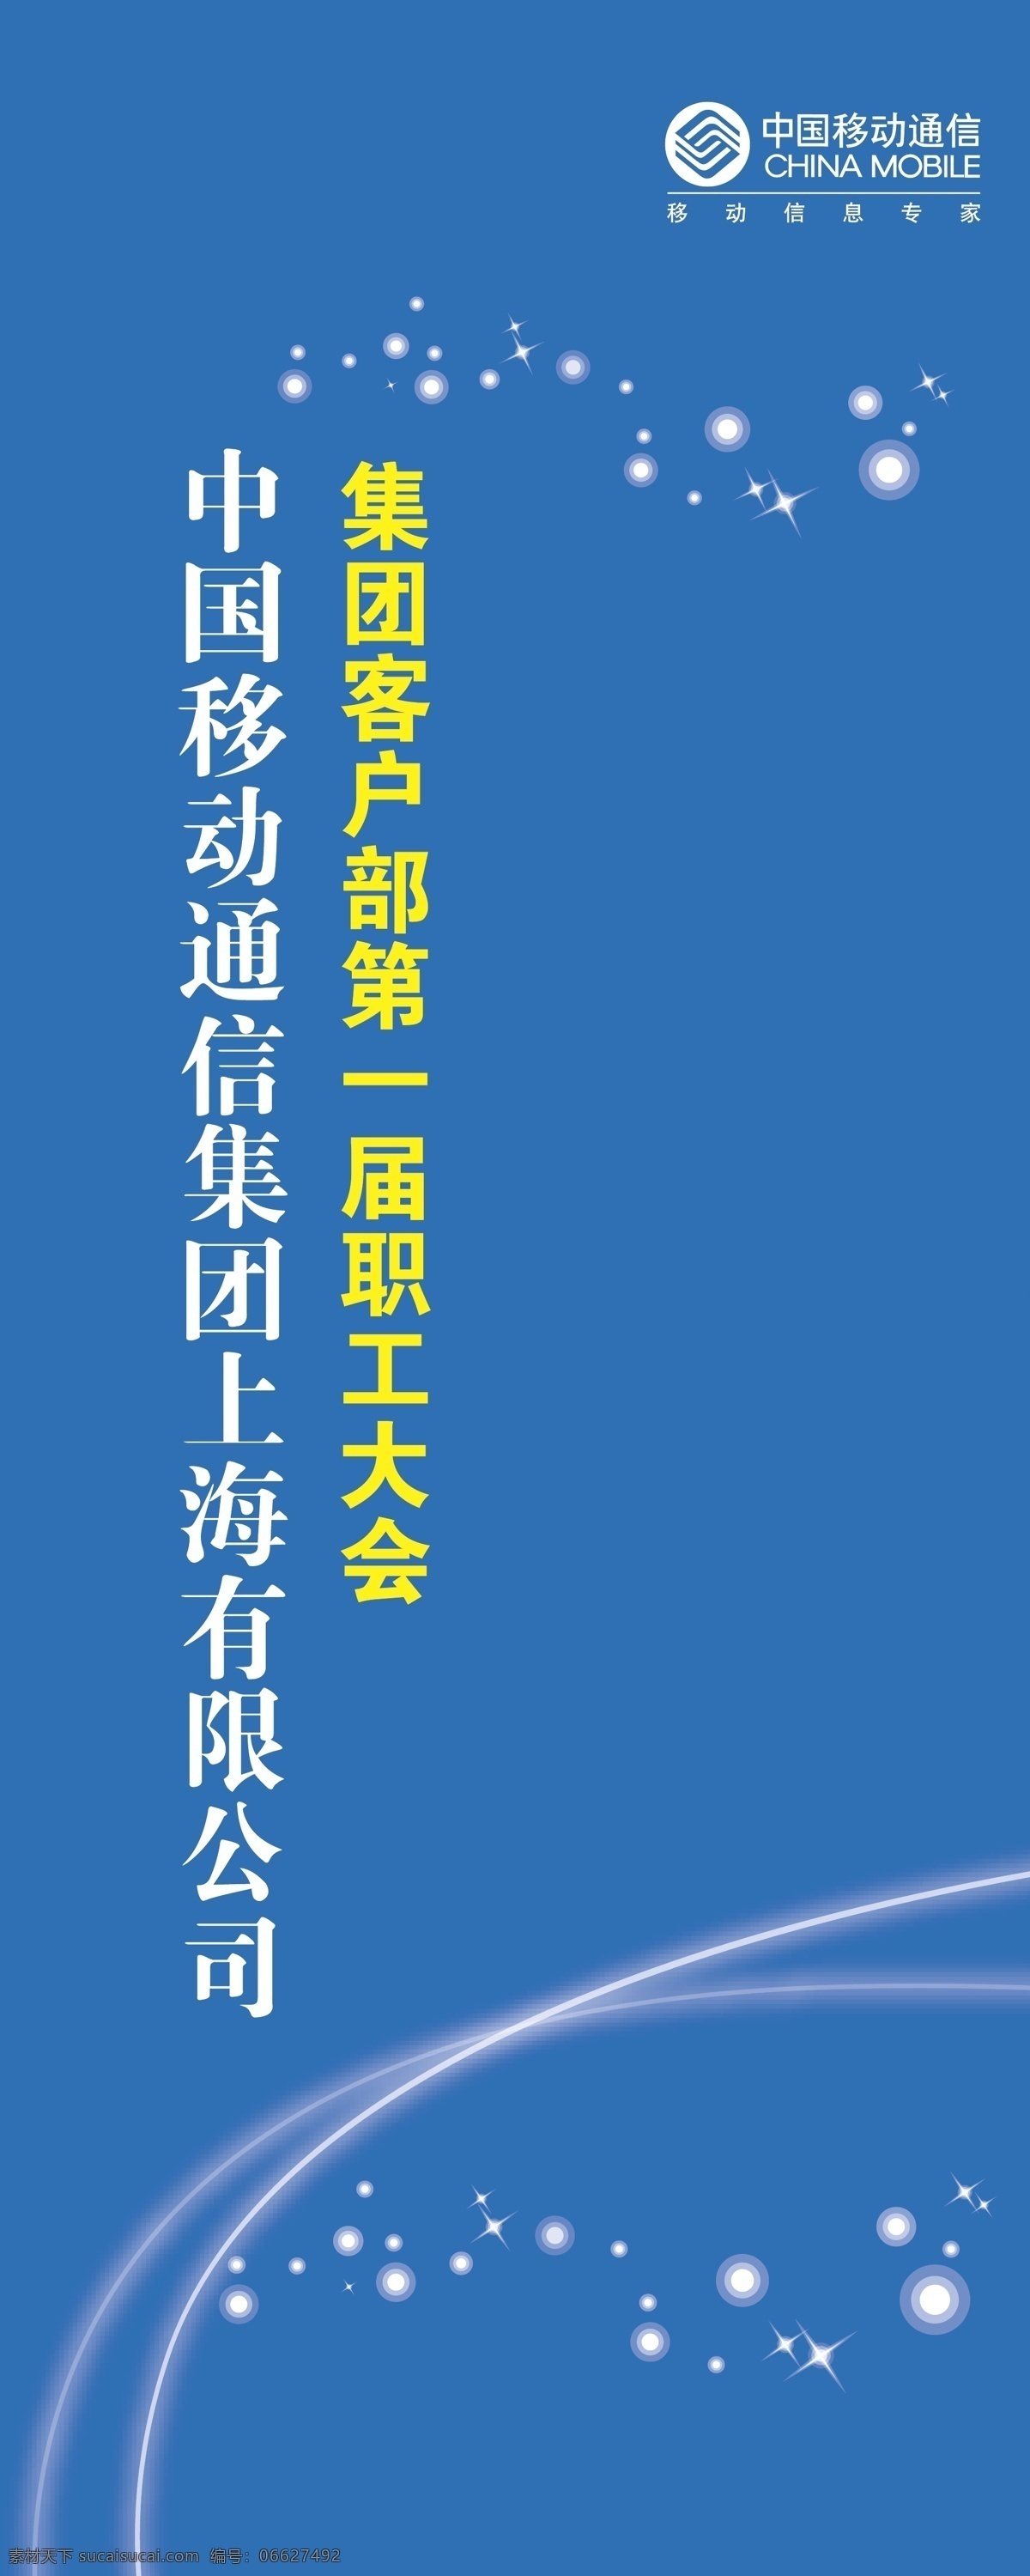 中国移动通信集团 上海 有限公司 上海有限公司 第一届 职工 大会 蓝色